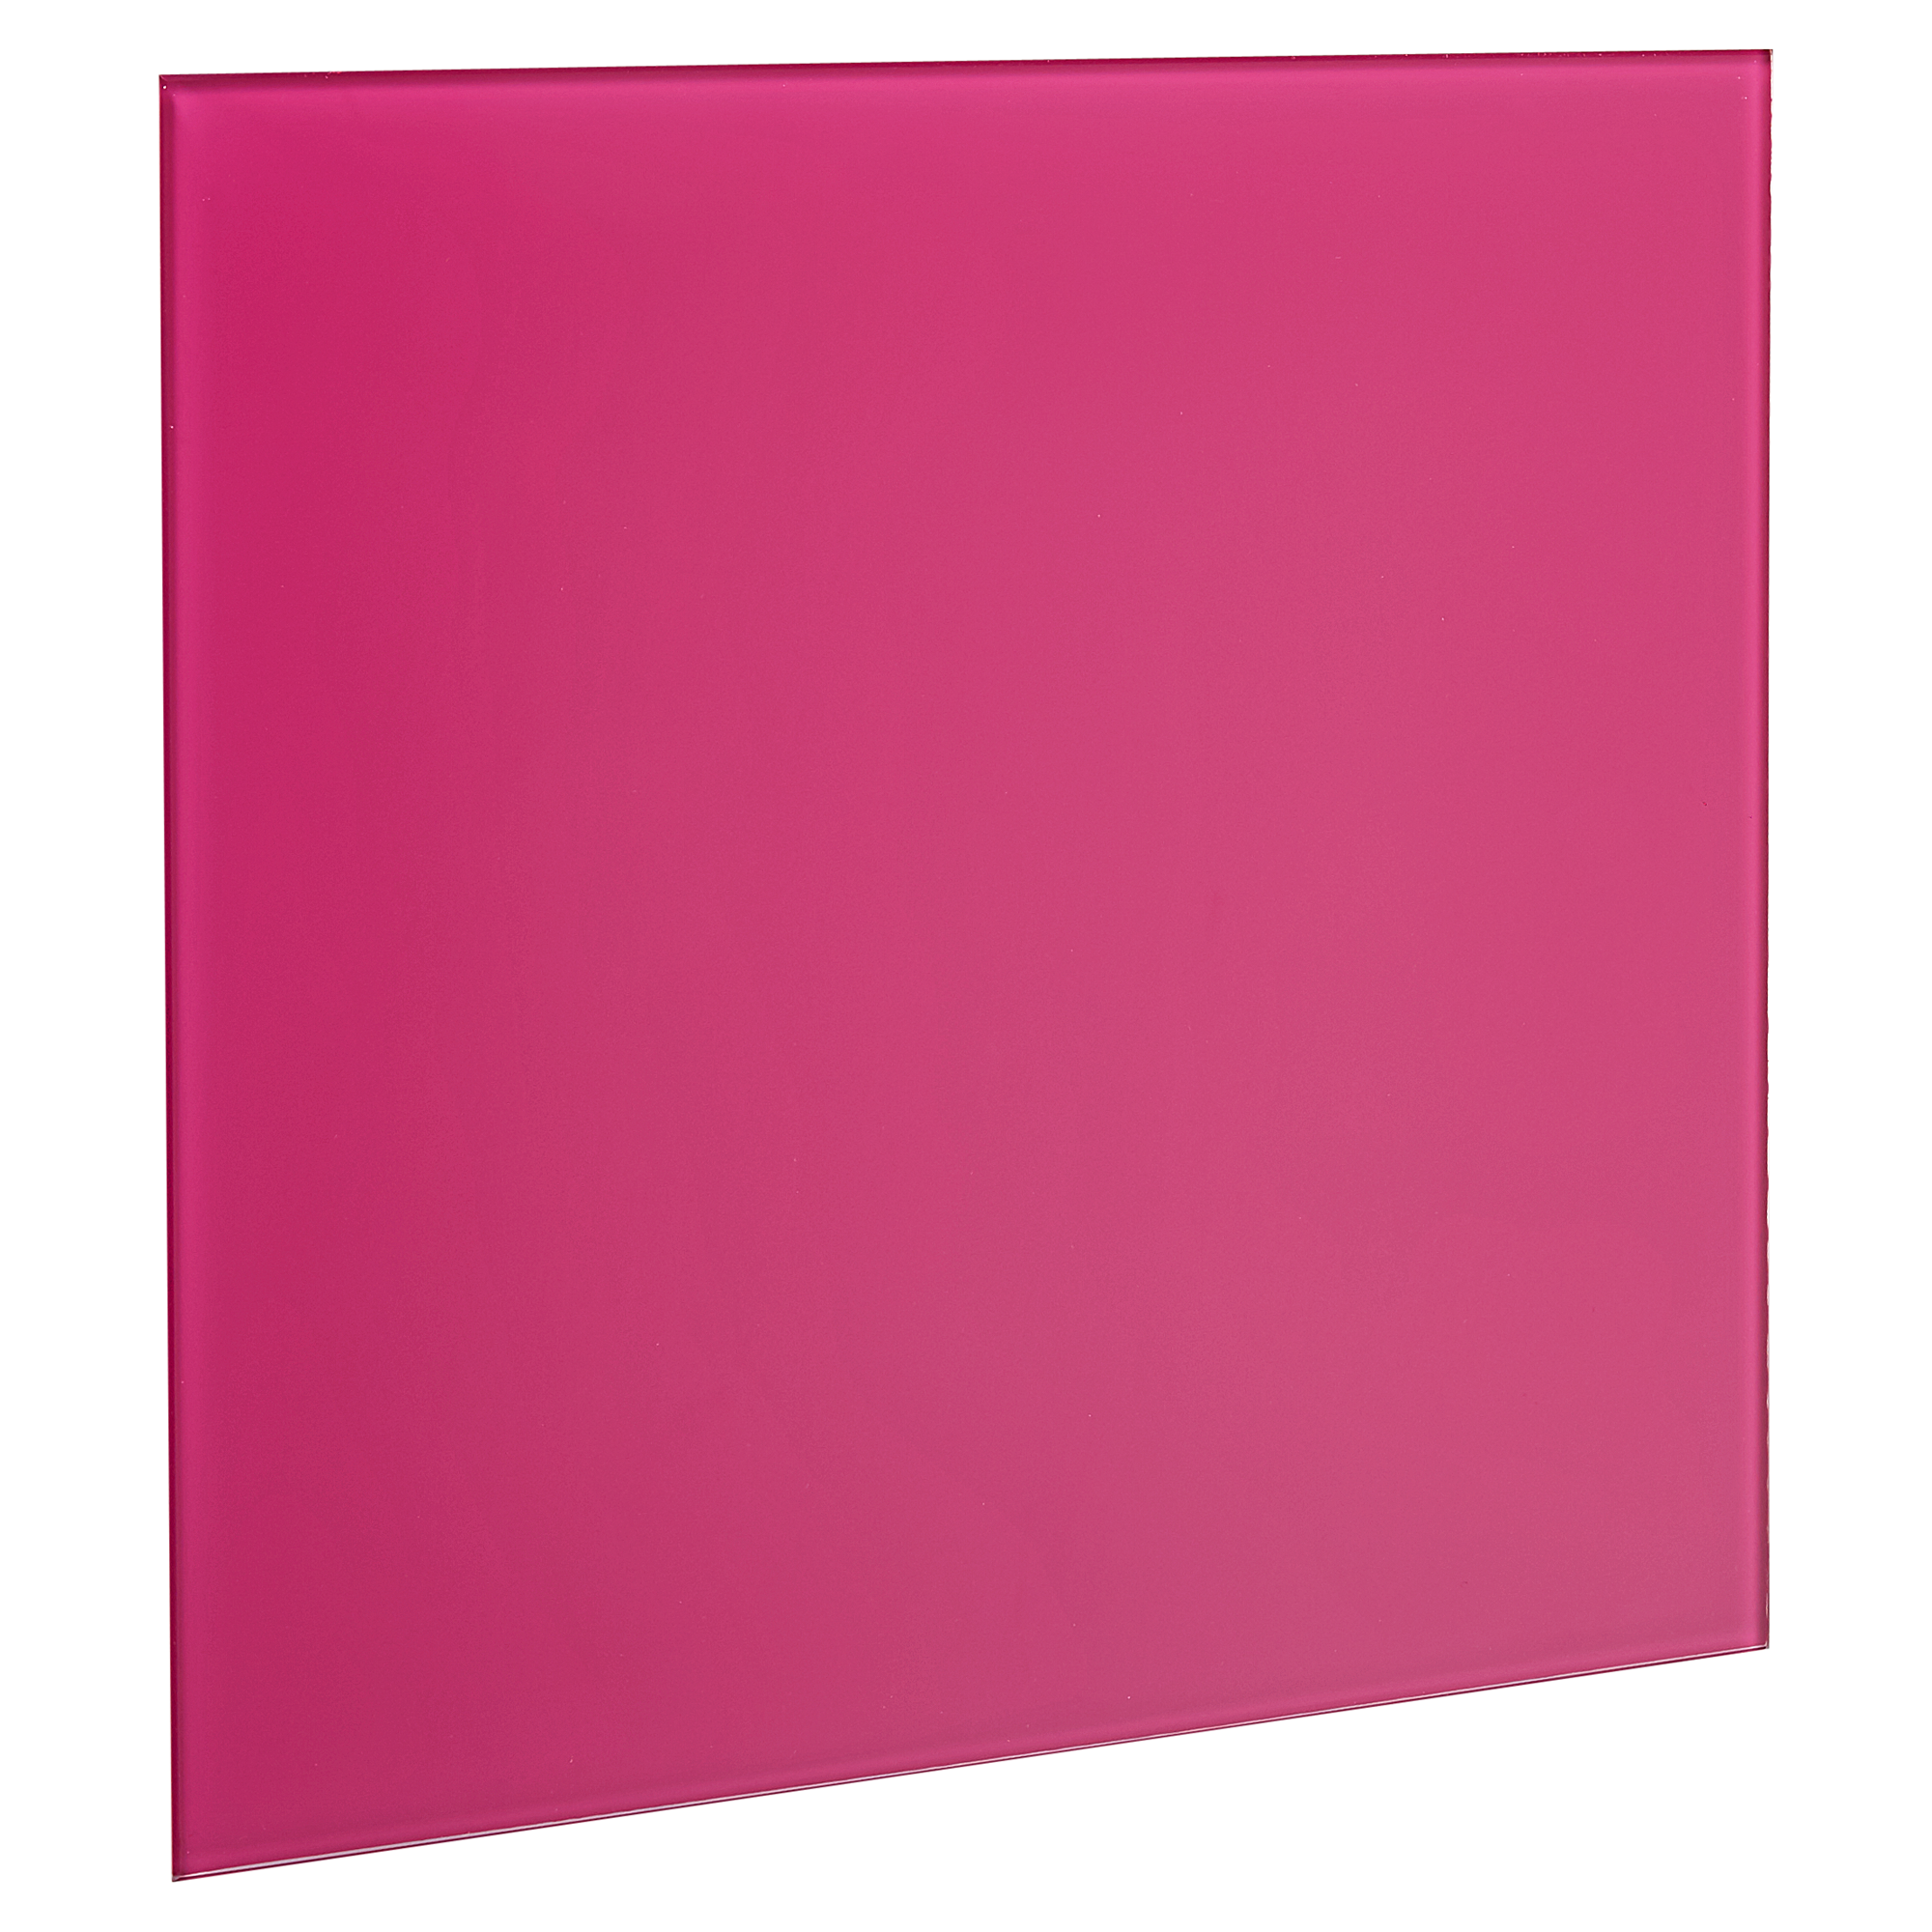 Memoboard beschreibbar pink 30 x 30 cm + product picture